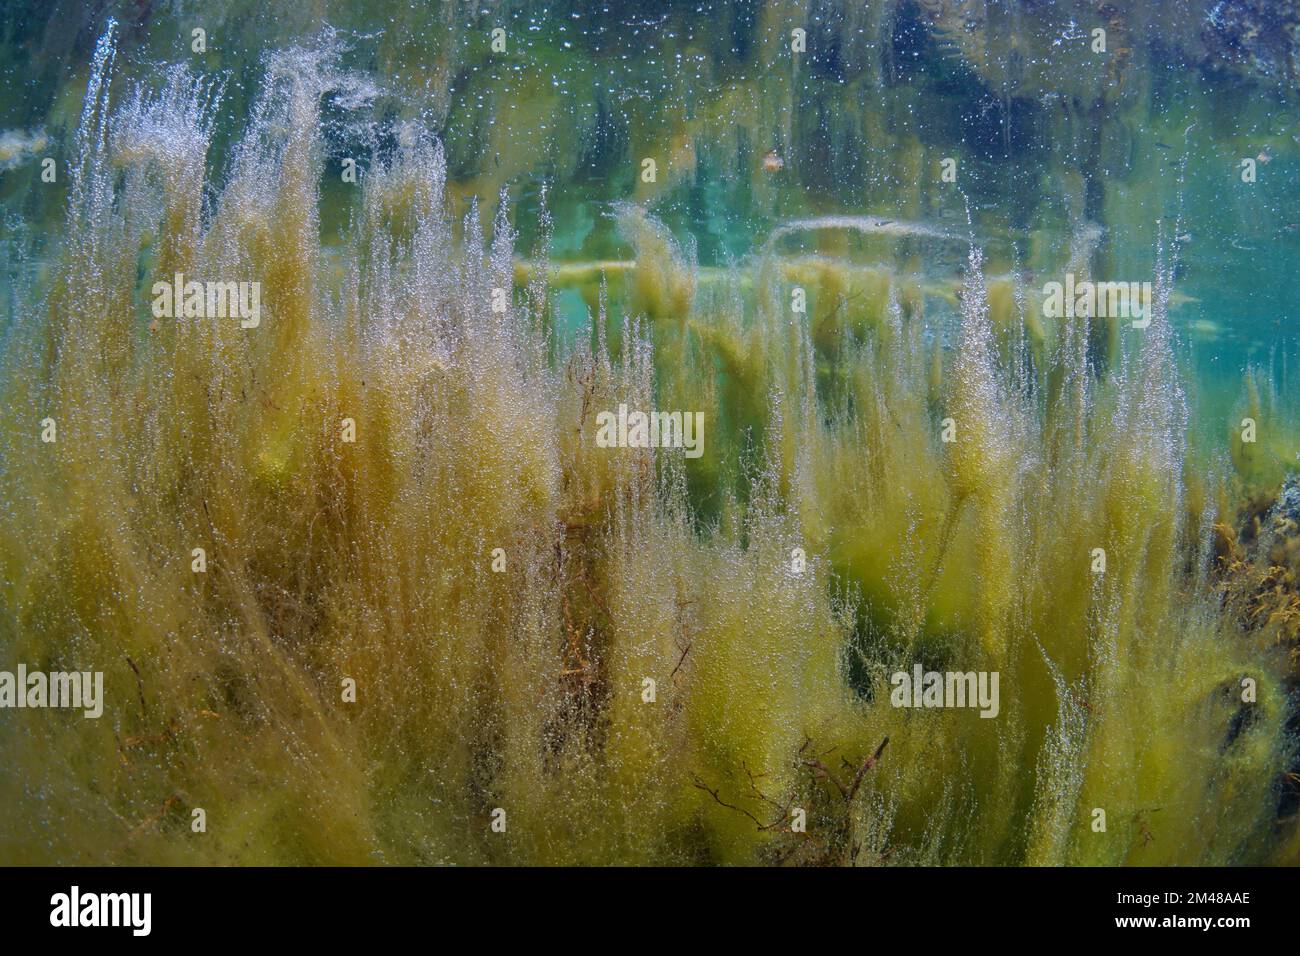 Algal bloom in the ocean, filamentous algae underwater, Eastern Atlantic, Spain Stock Photo